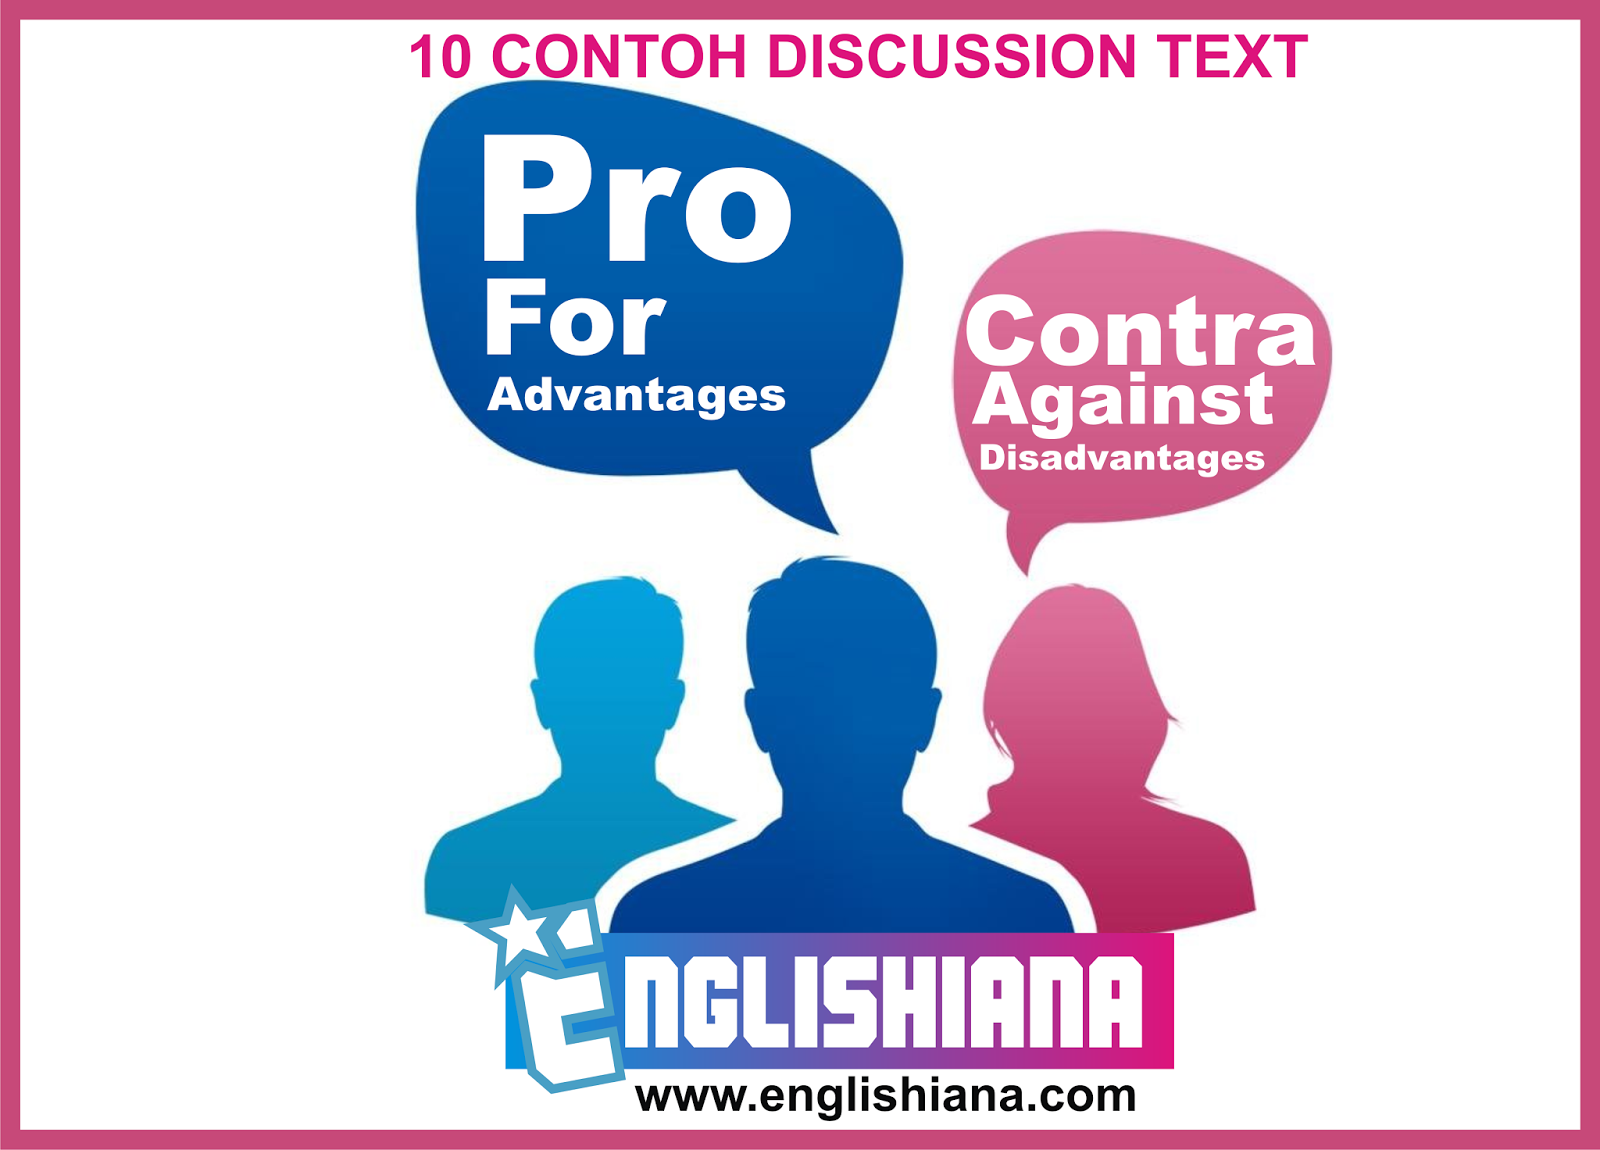 10 Contoh Discussion Text Dalam Bahasa Inggris Dan Terjemahannya